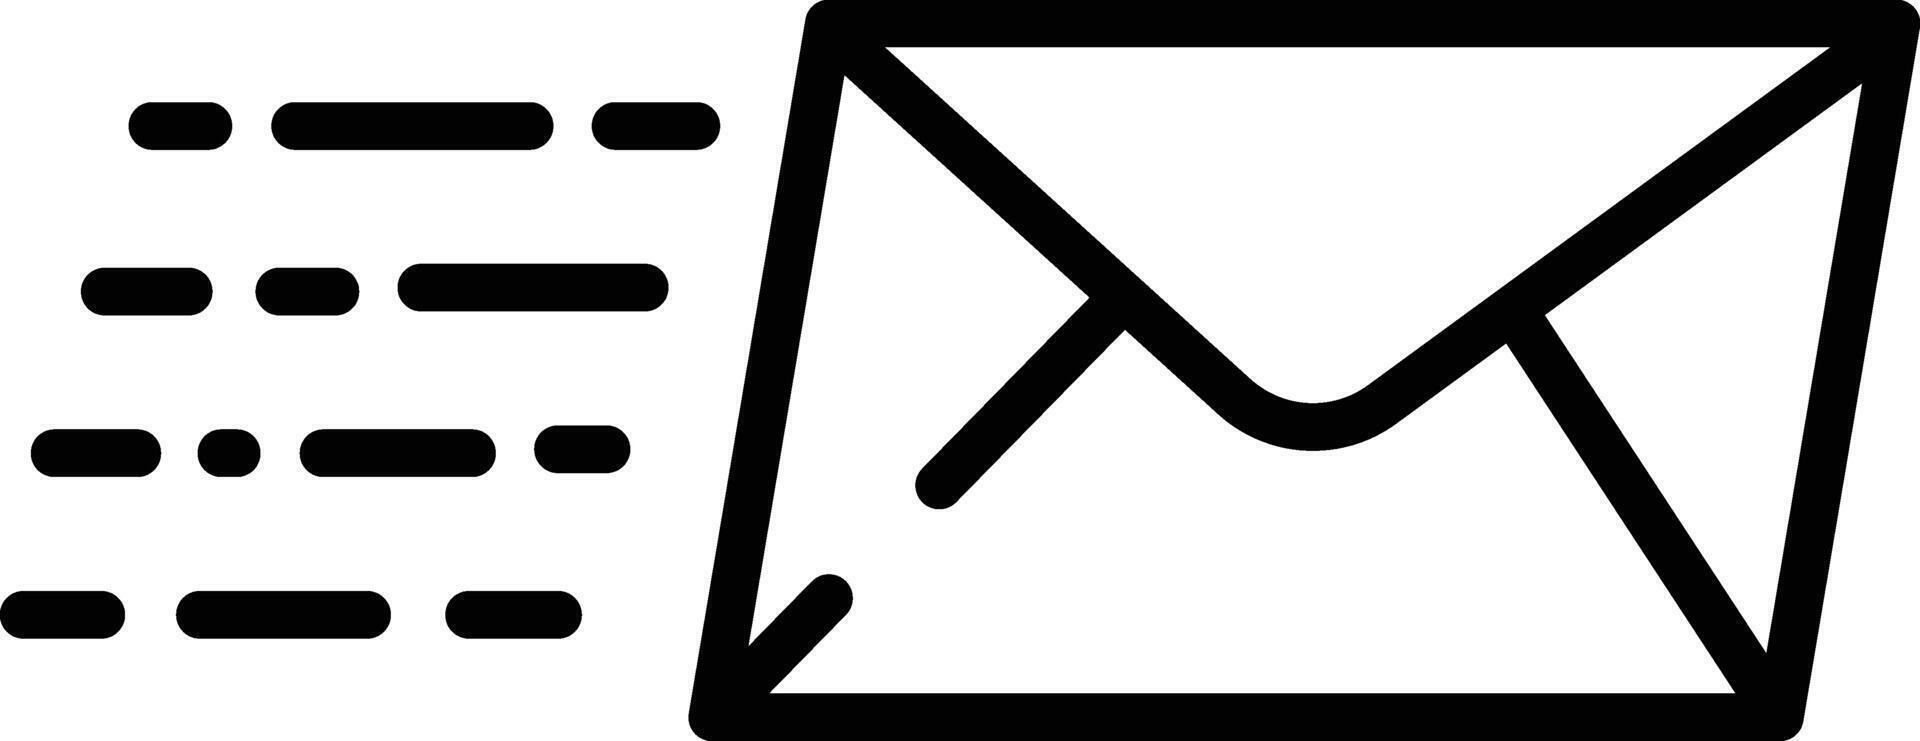 Email outline illustration vector